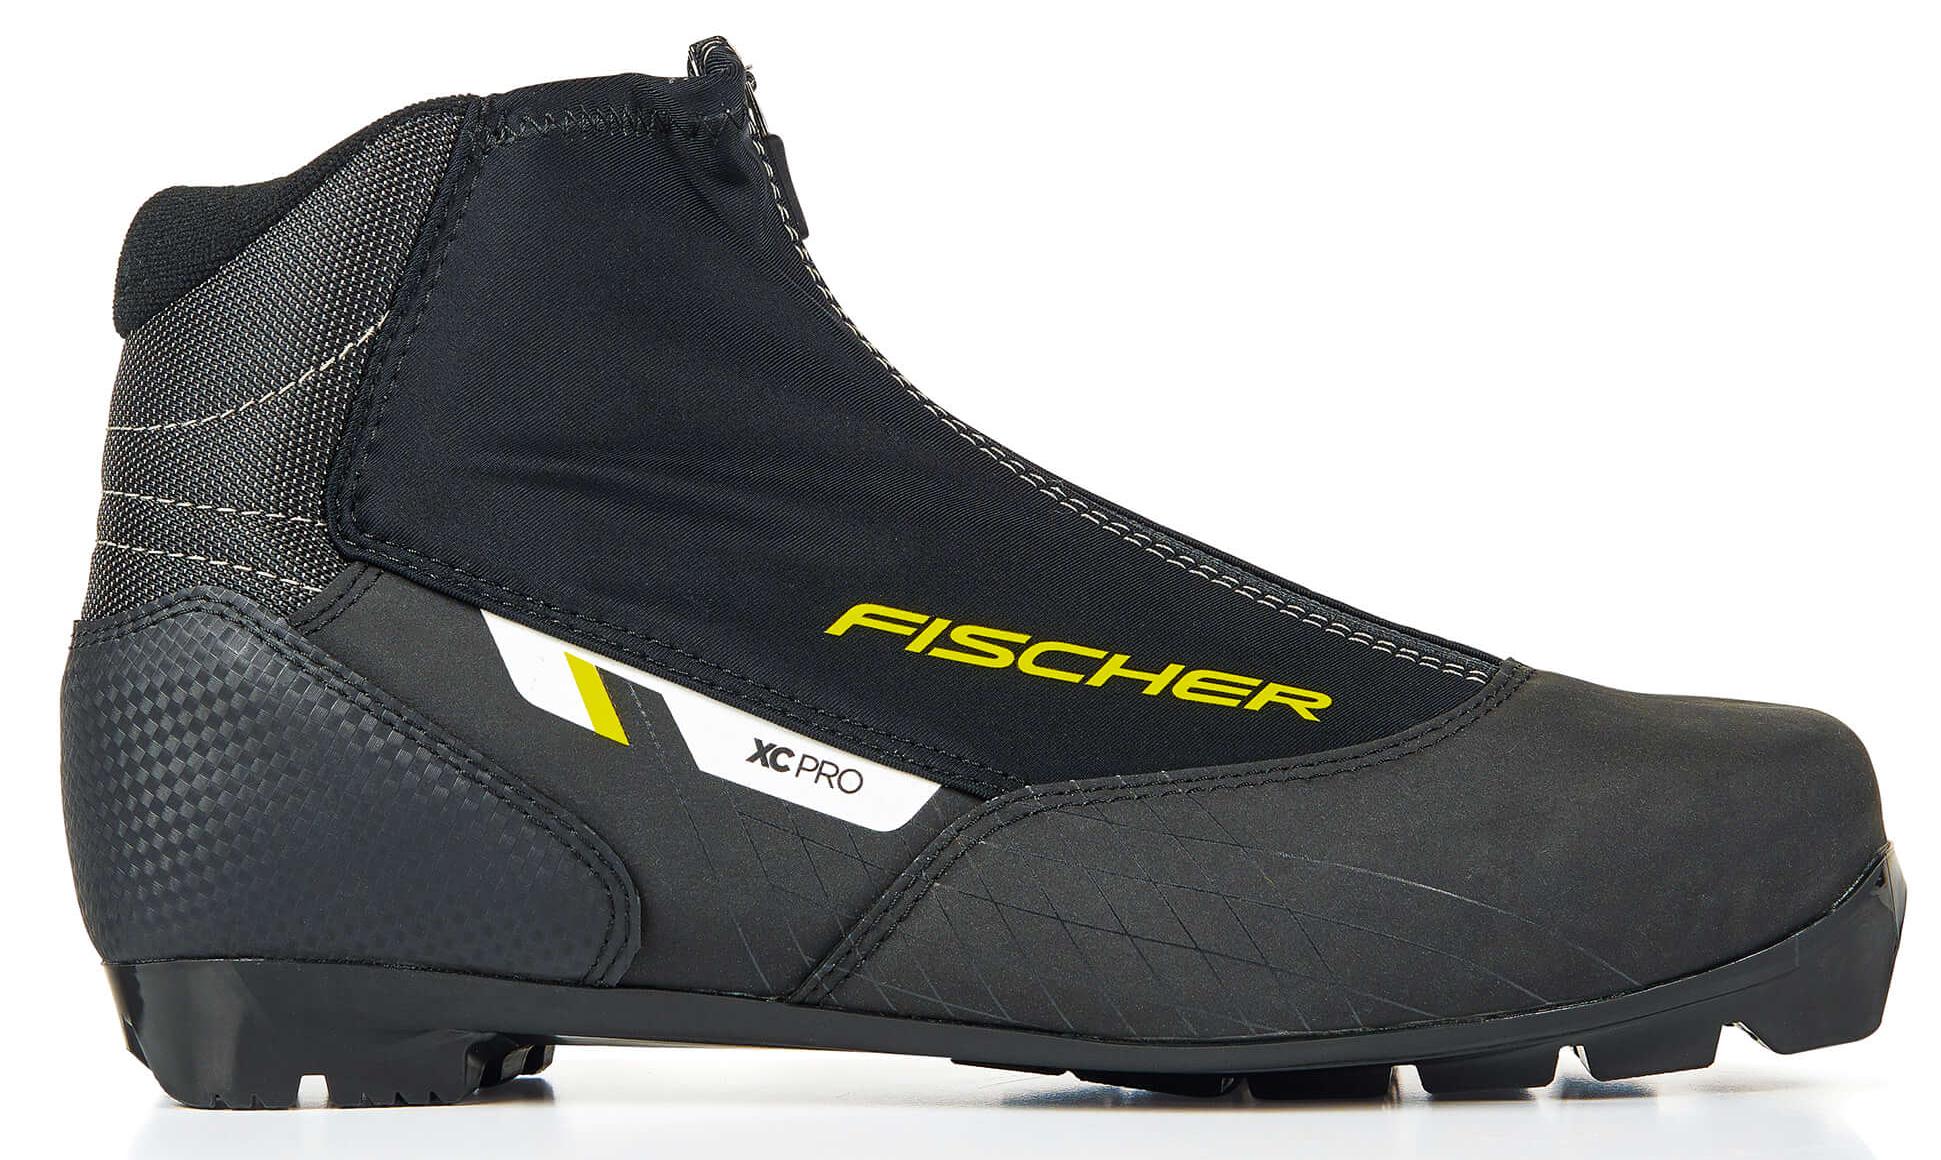 Ботинки для беговых лыж Fischer Xc Pro 2021, black/yellow, 46